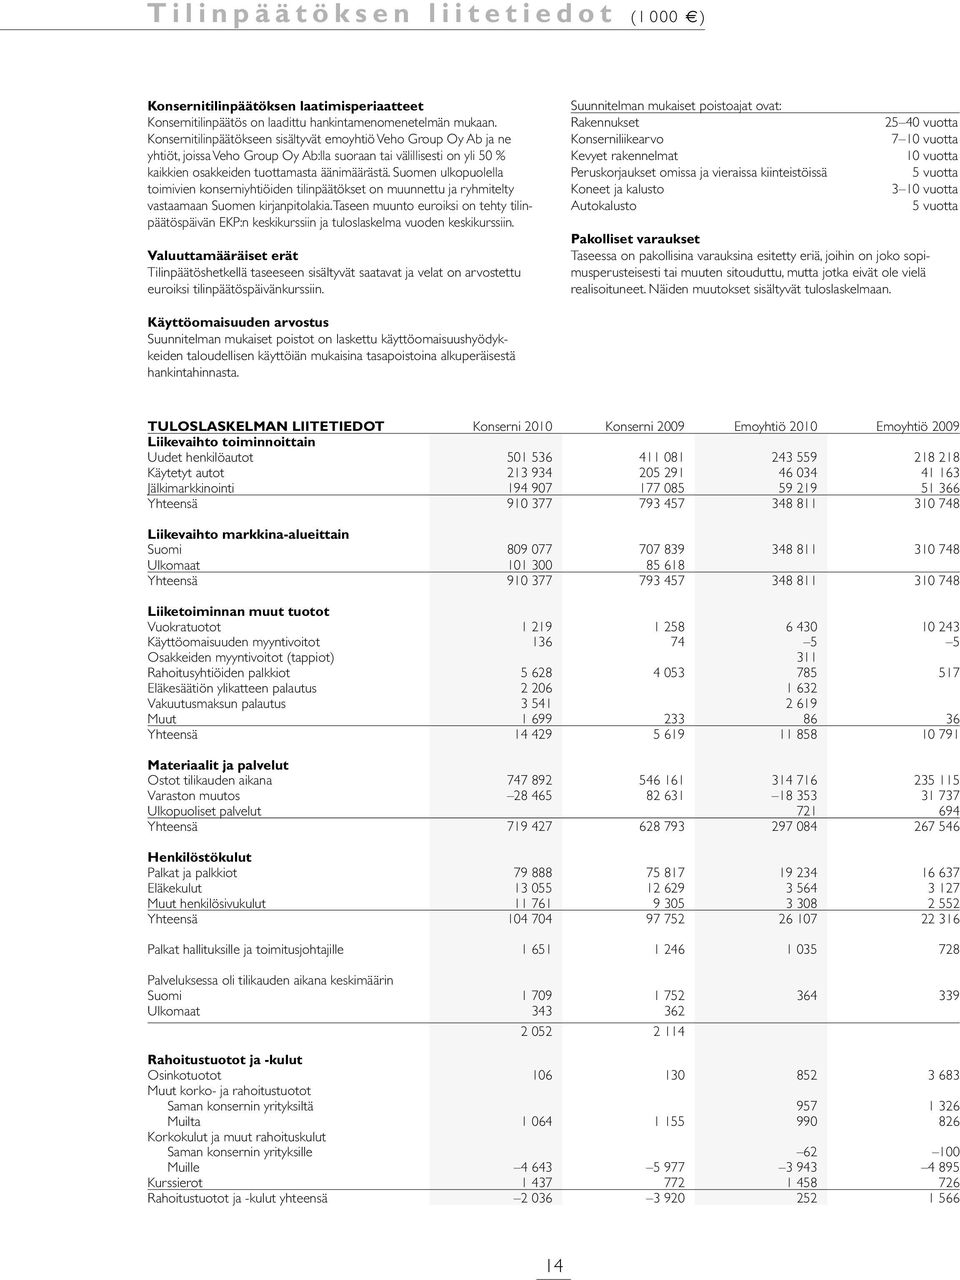 Suomen ulkopuolella toimivien konserniyhtiöiden tilinpäätökset on muunnettu ja ryhmitelty vastaamaan Suomen kirjanpitolakia.